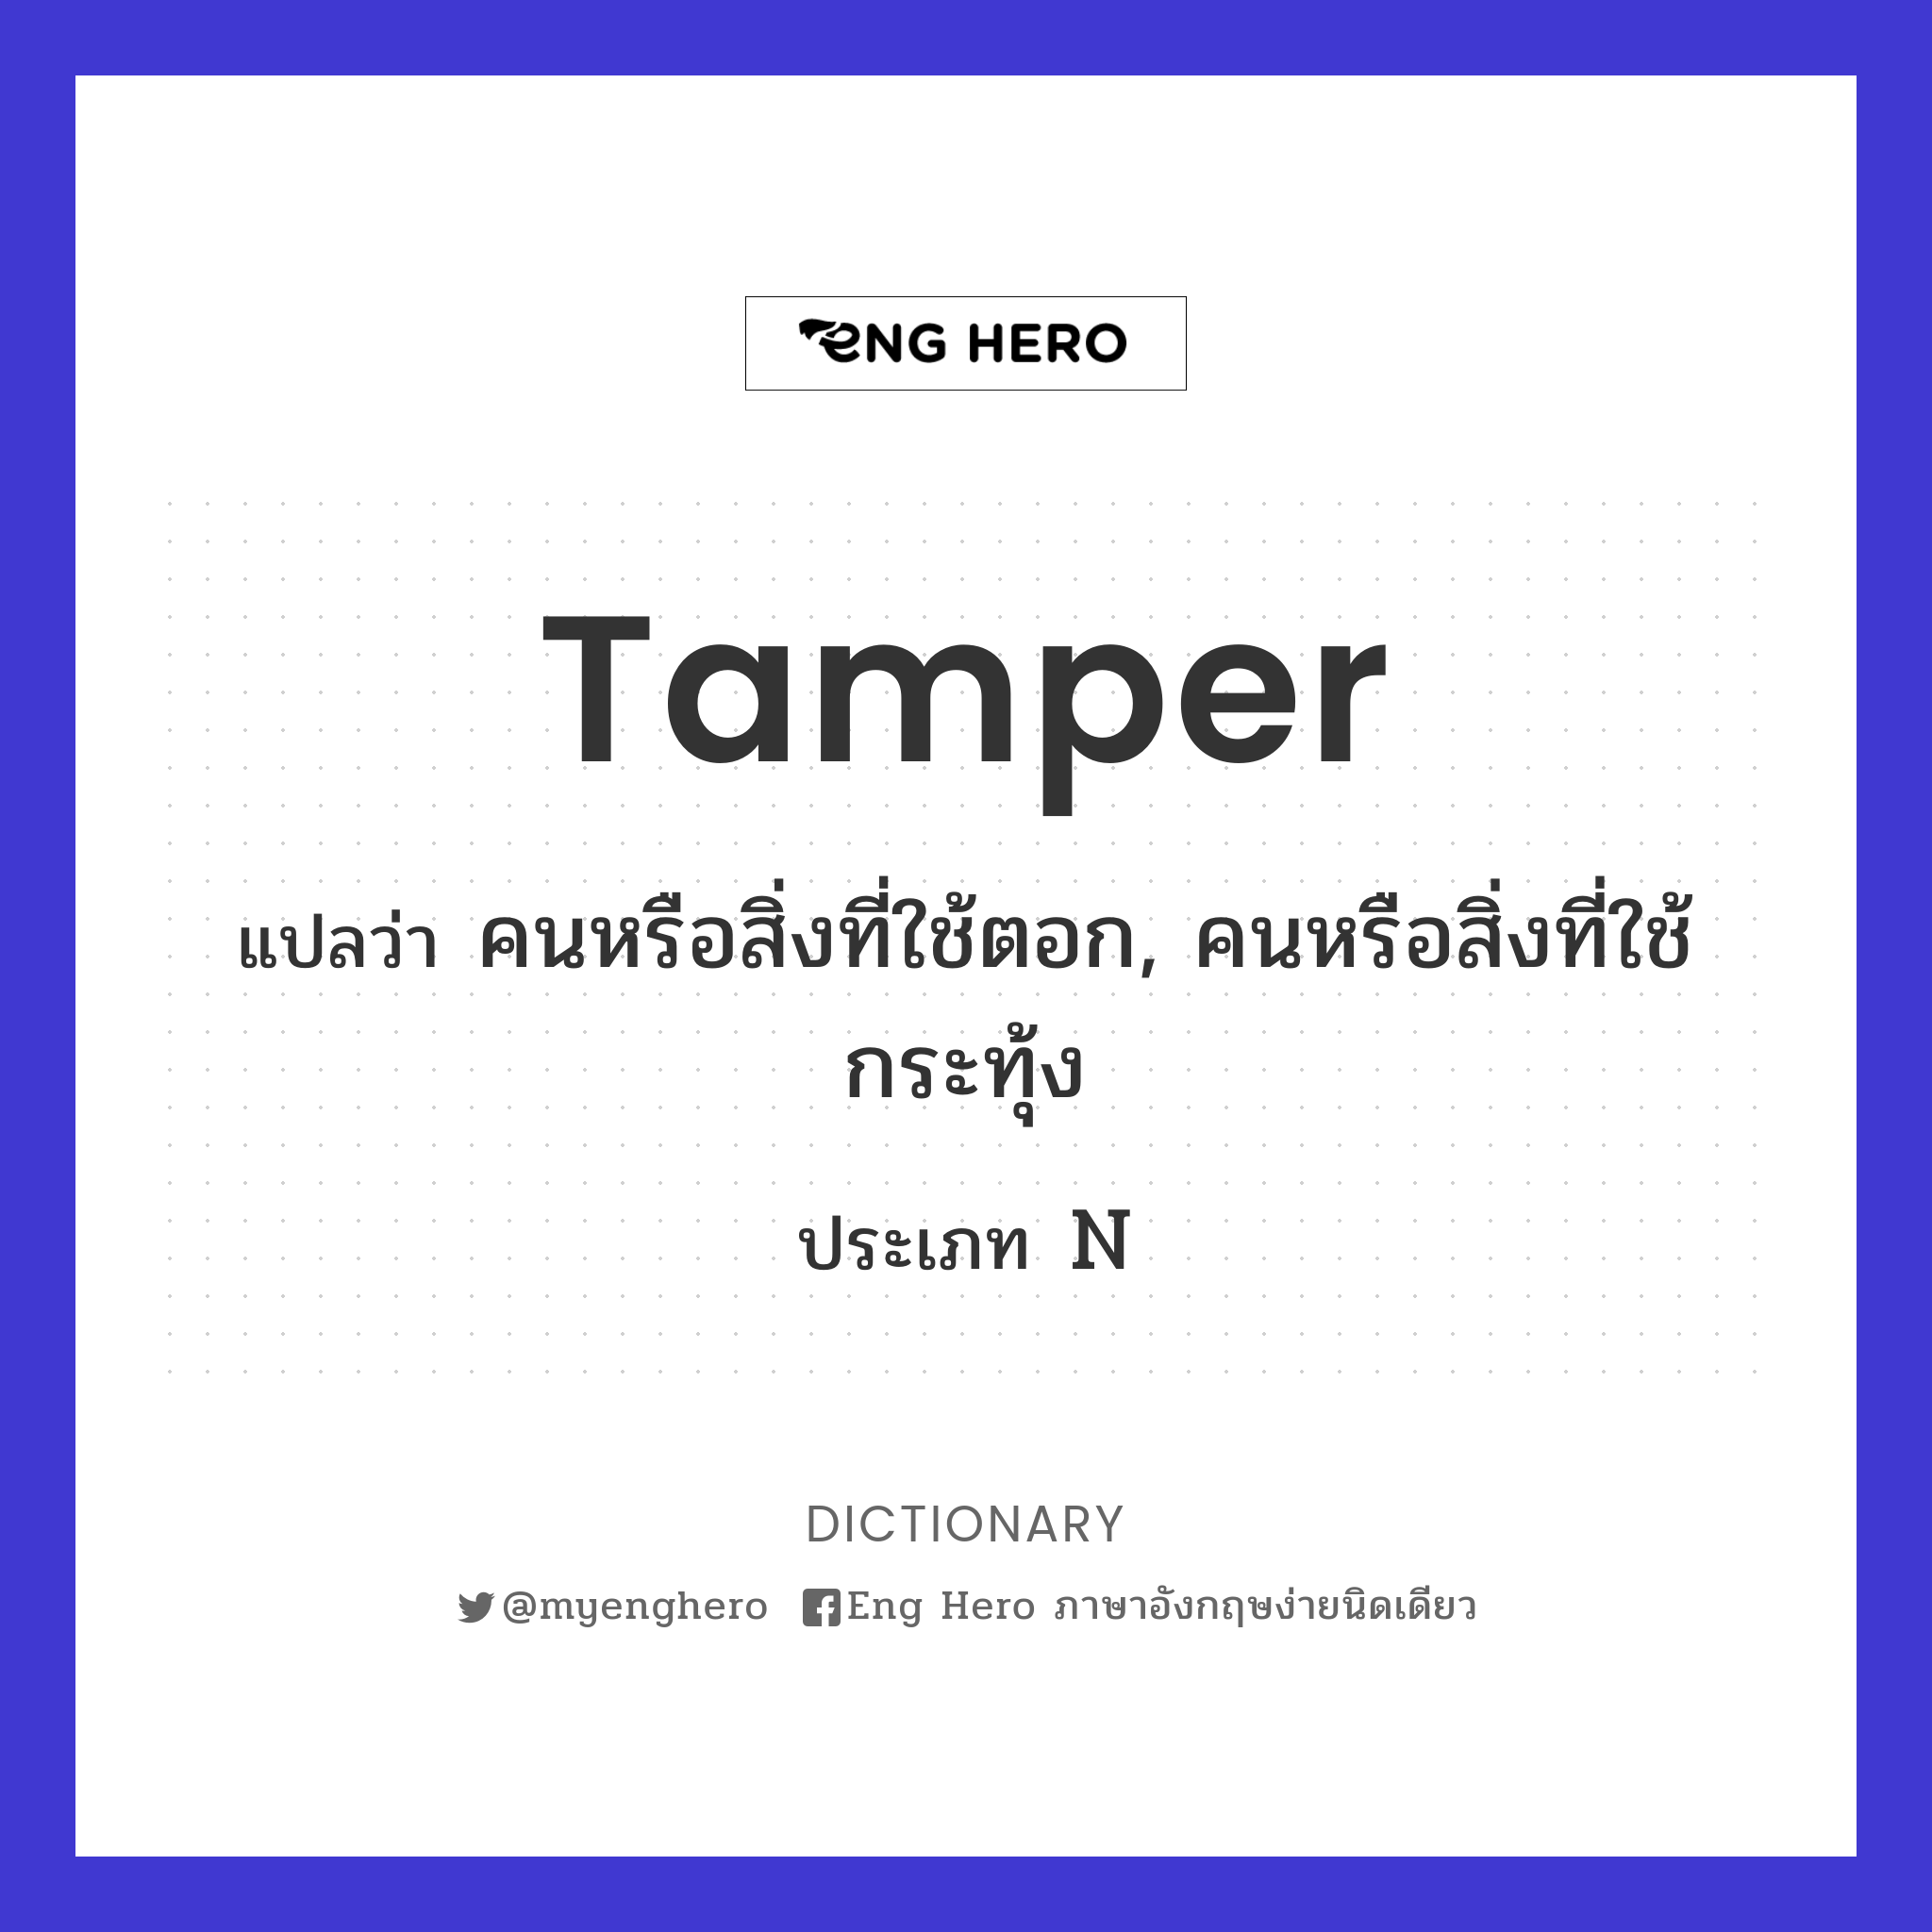 tamper